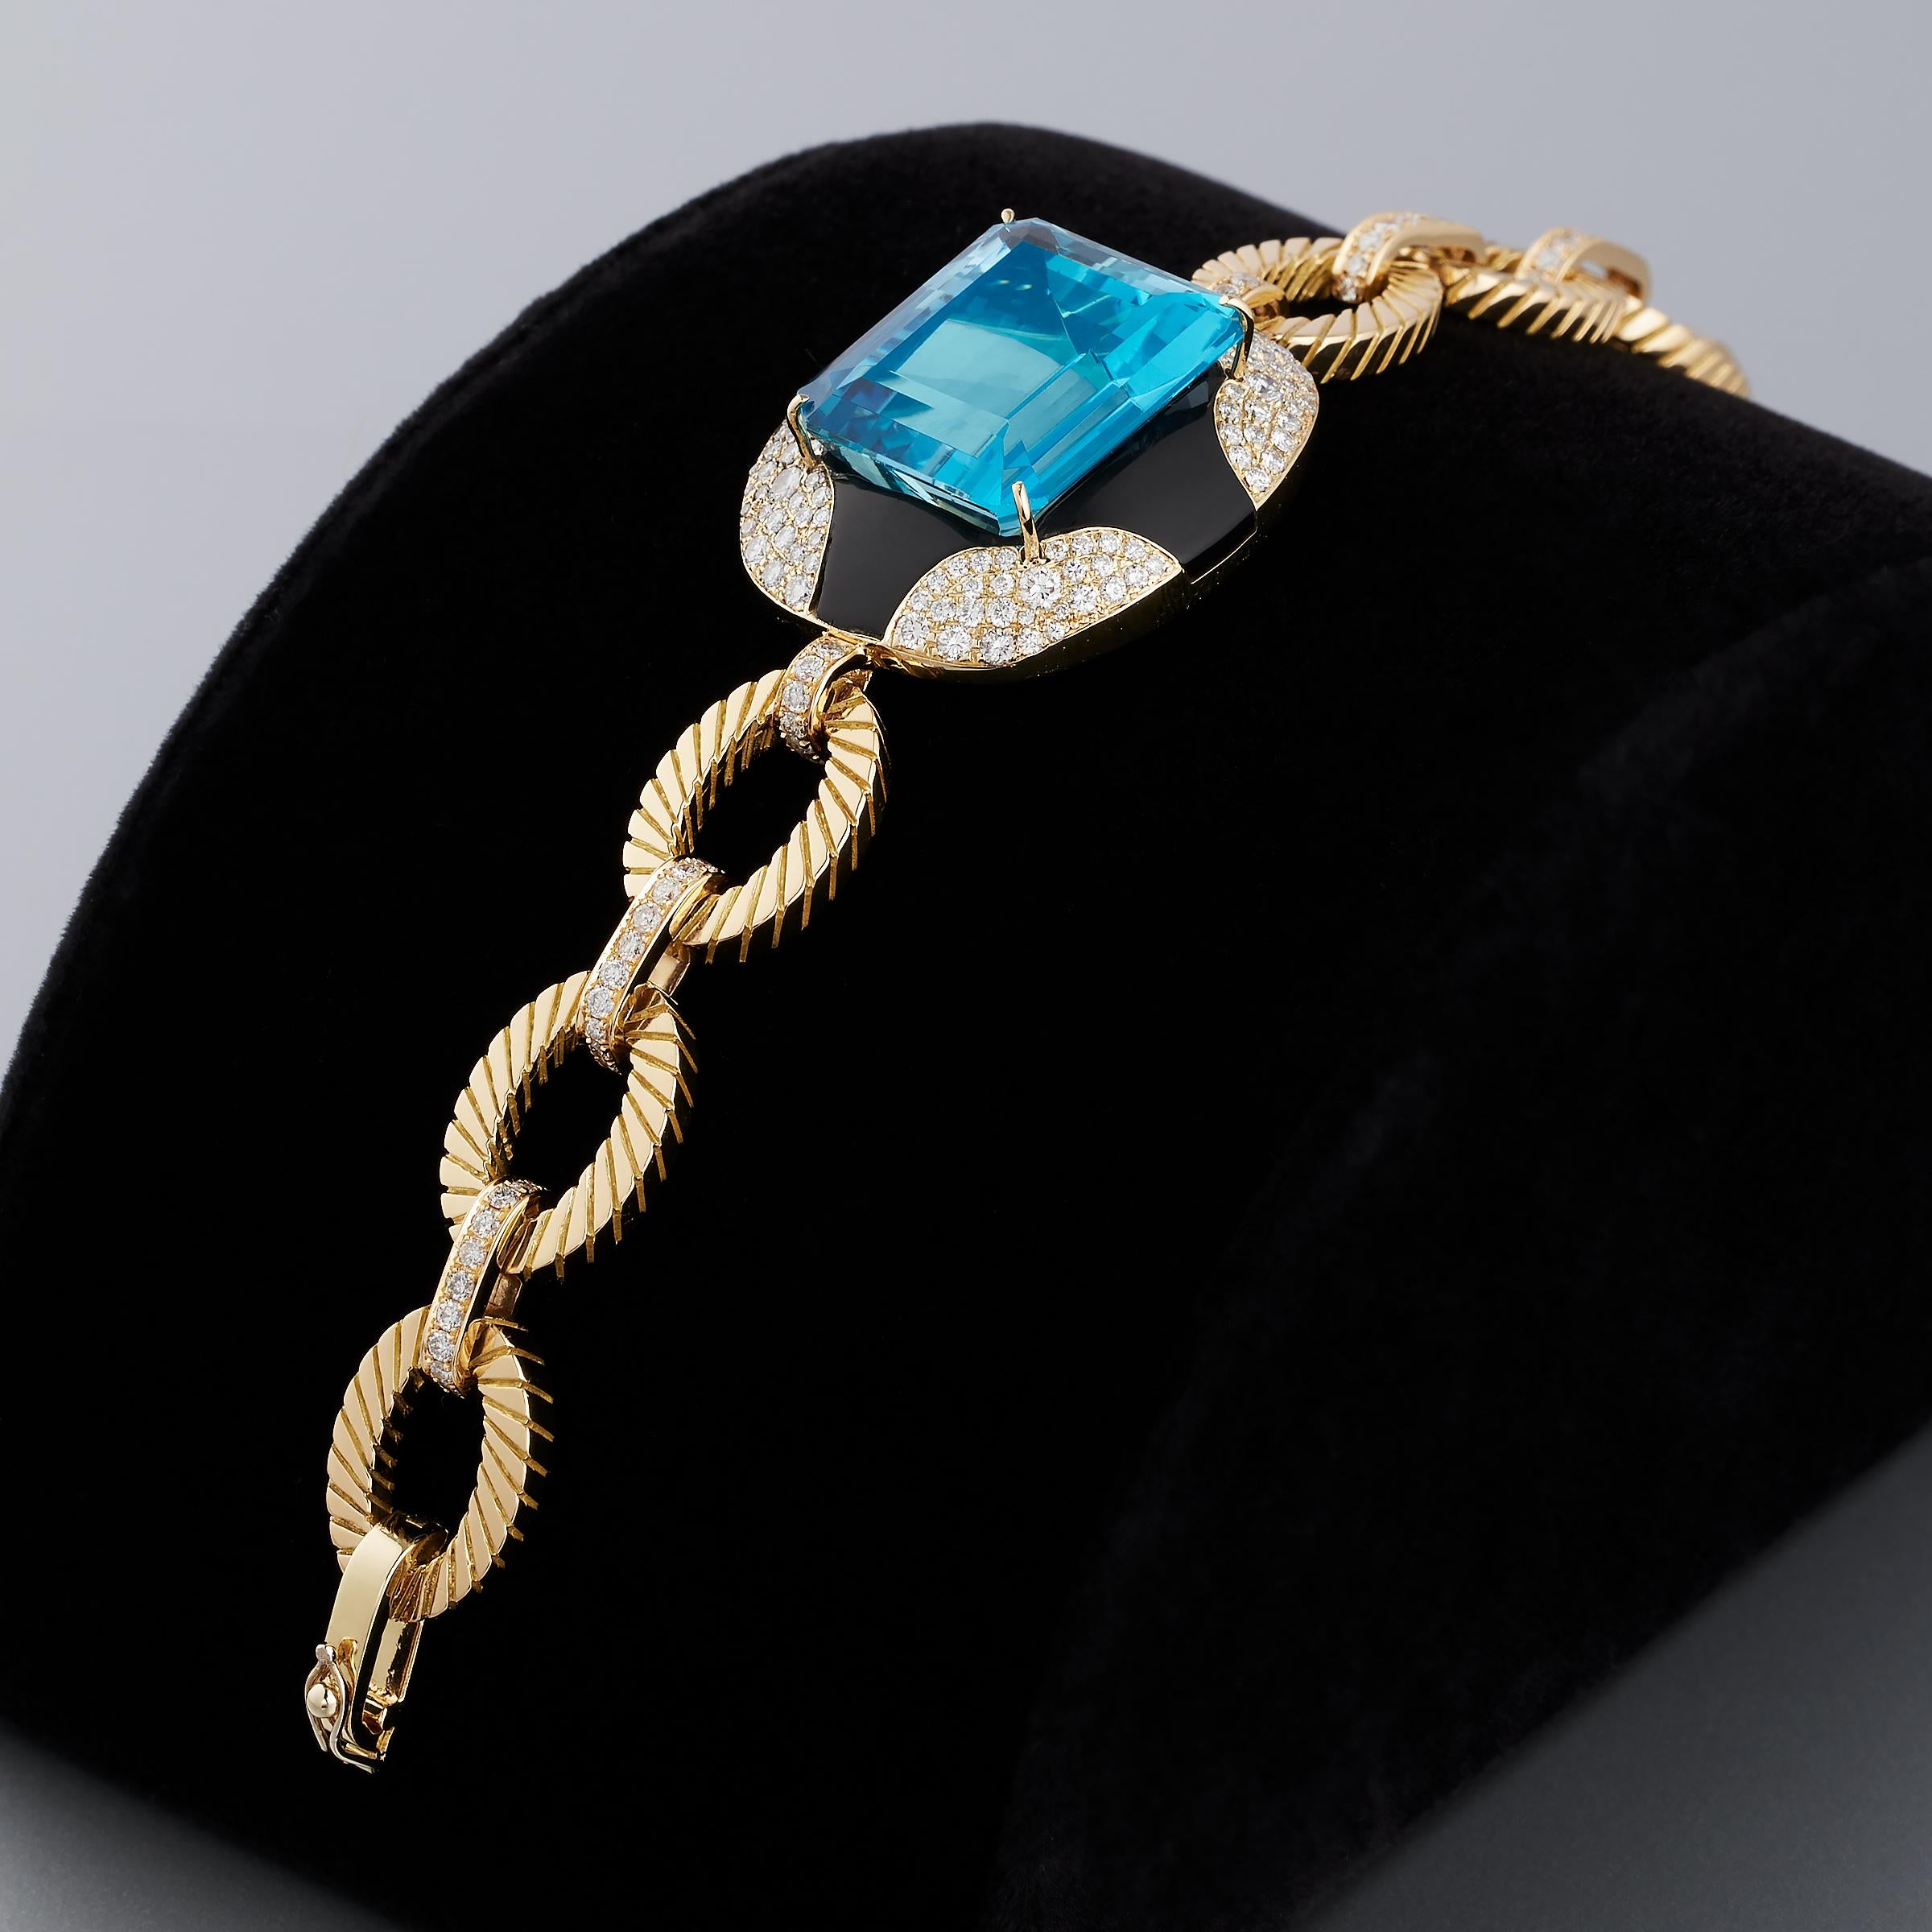 Außergewöhnliches Armband mit einem großen Aquamarin, einem Diamanten und schwarzem Onyx, das Mauboussin Paris zugeschrieben wird und in 18 Karat Gelbgold gefasst ist. Dieses beeindruckende Armband ist eine Vintage-Kreation aus den 1980er Jahren und